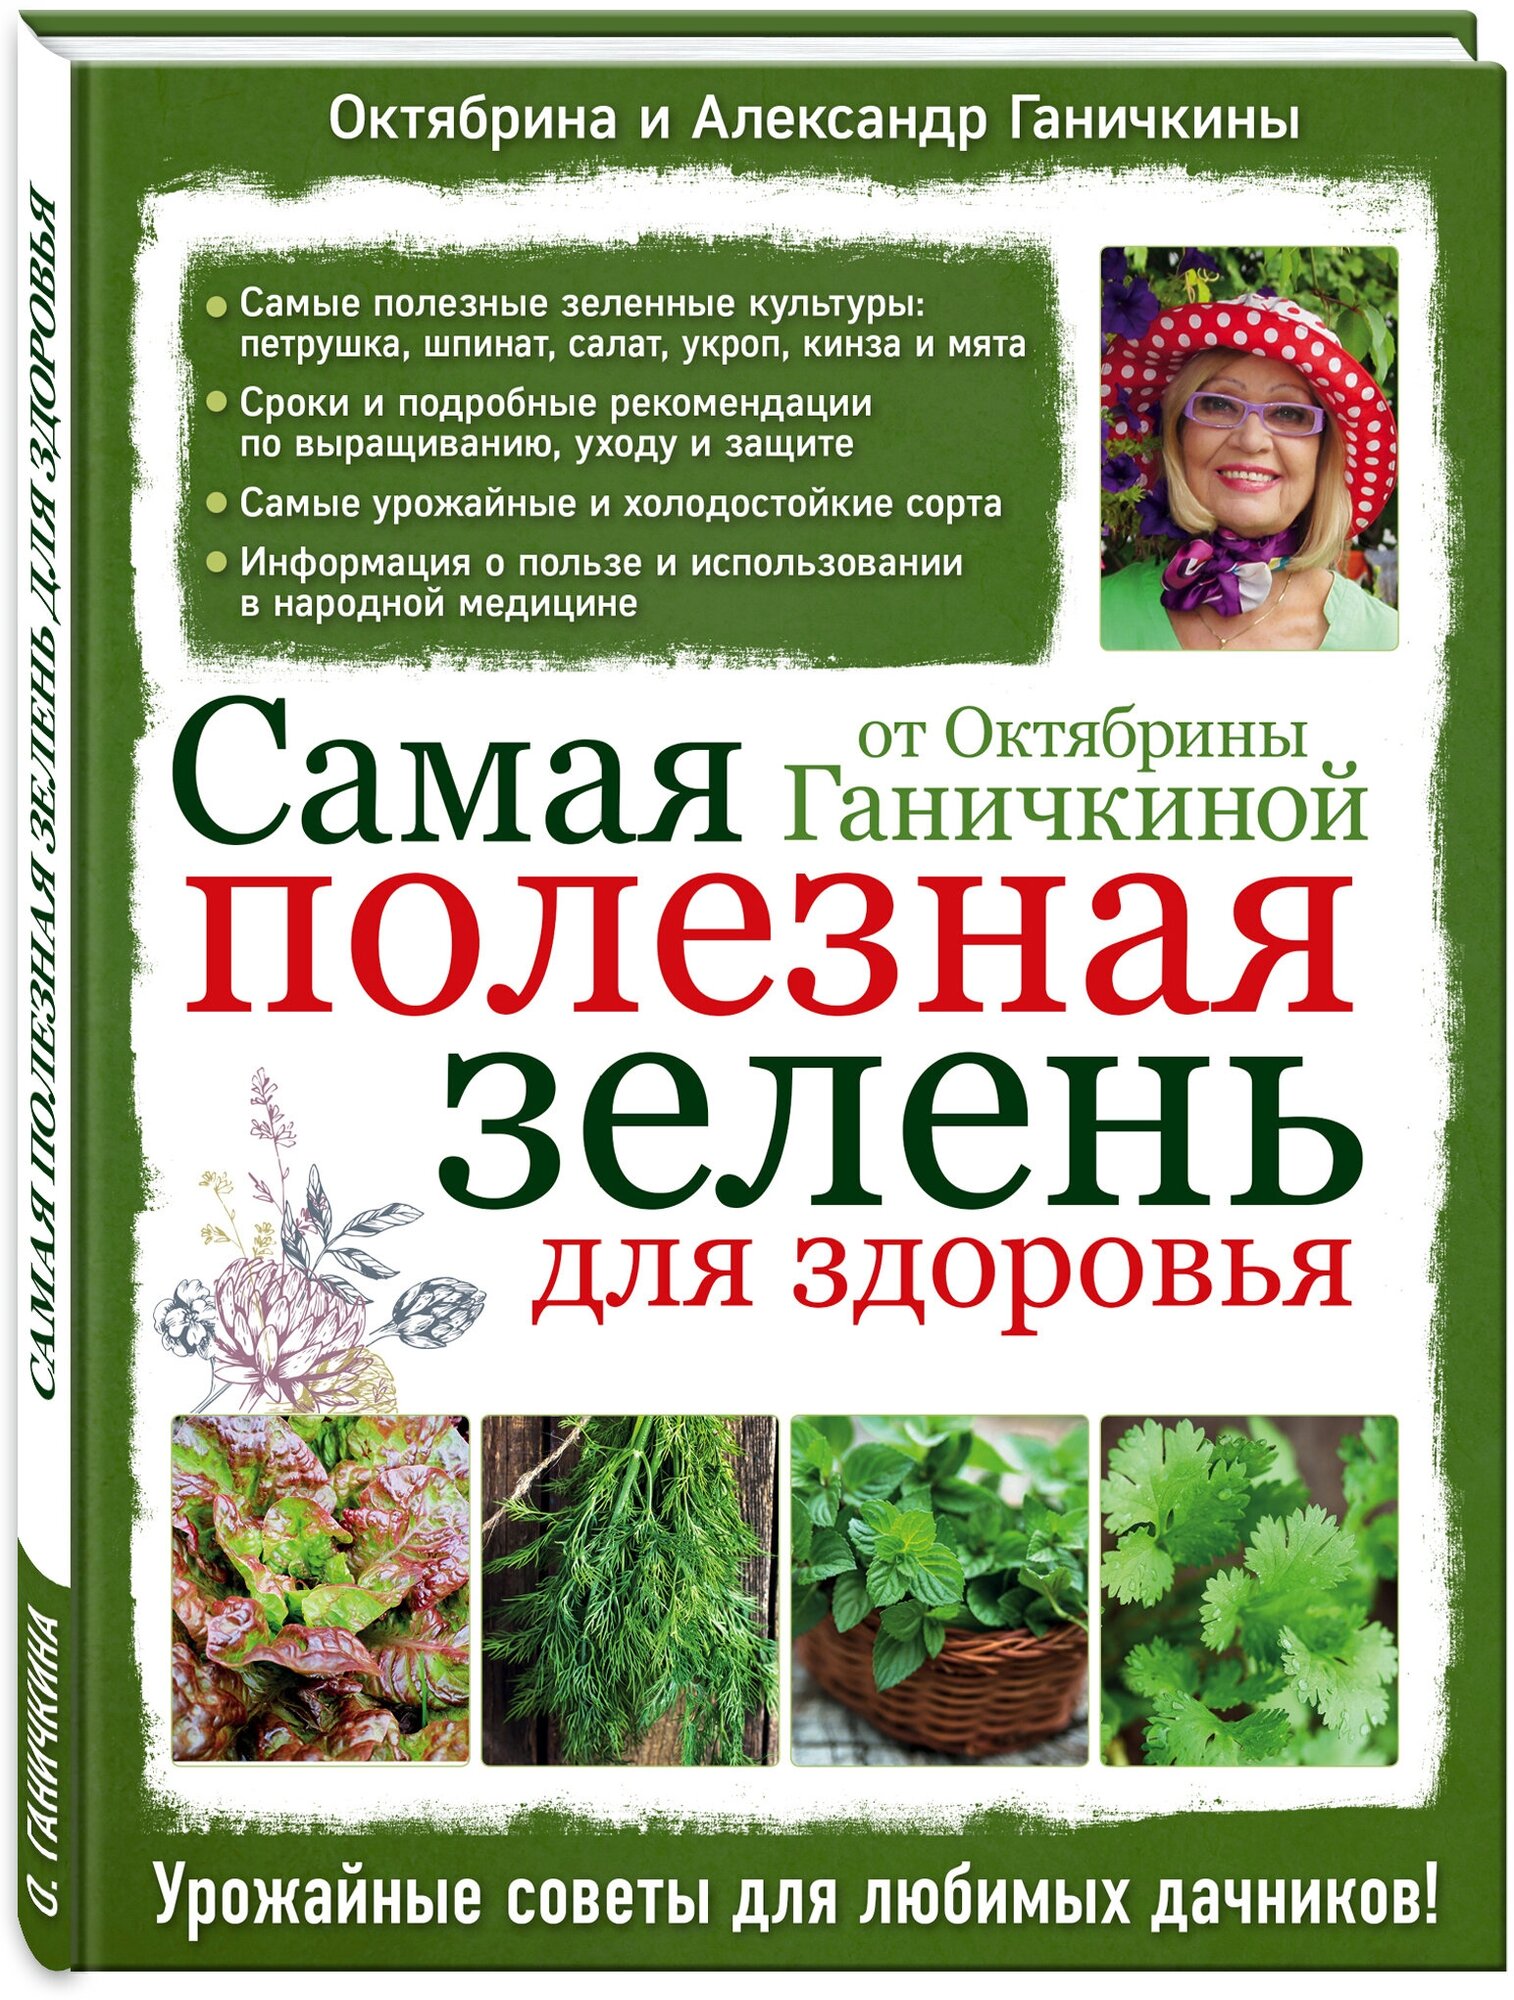 Самая полезная зелень для здоровья от Октябрины Ганичкиной - фото №1